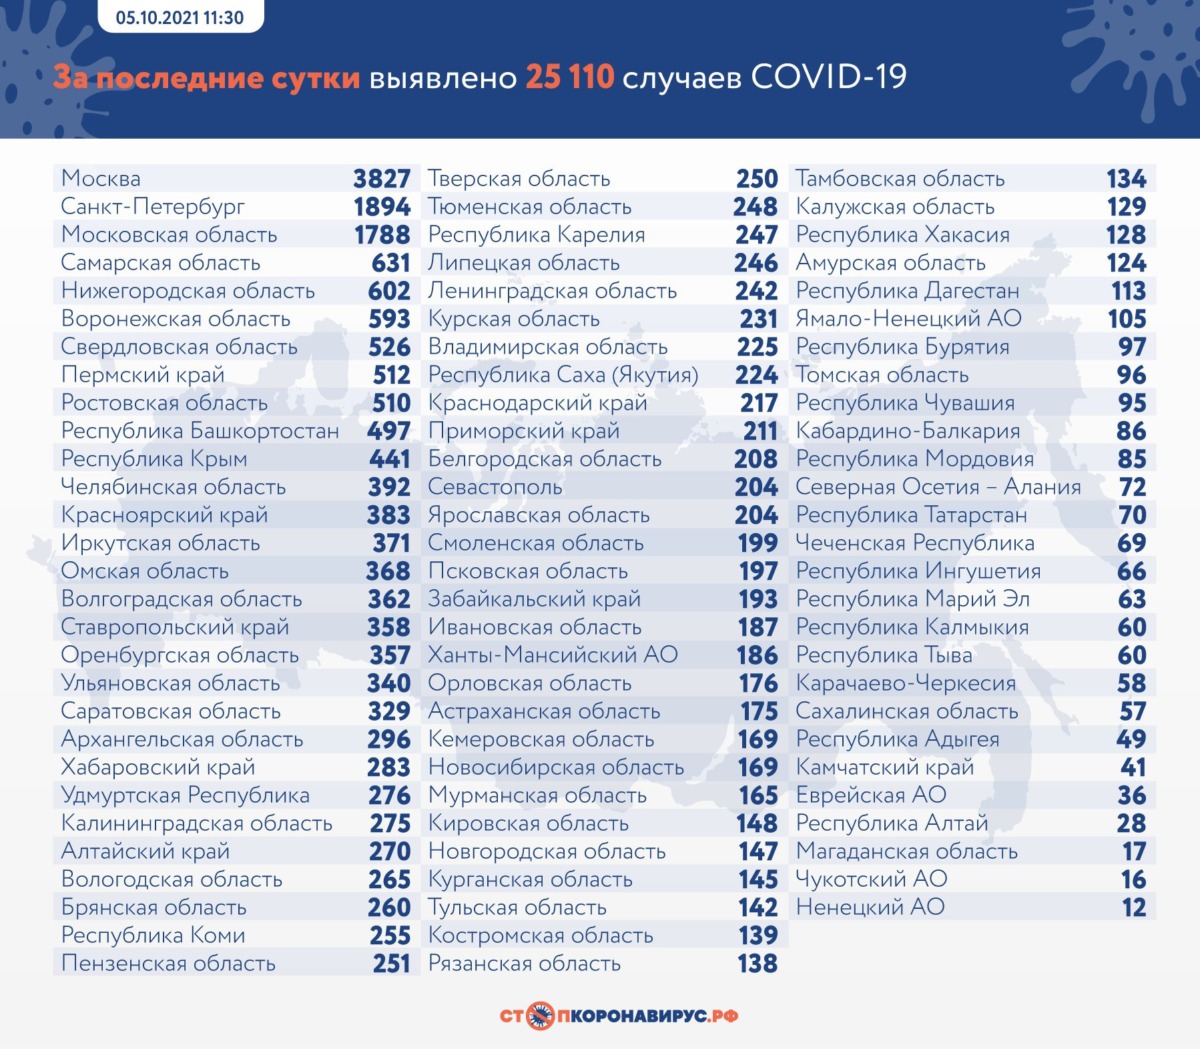 Новый антирекорд по смертям от коронавируса в России на 5 октября